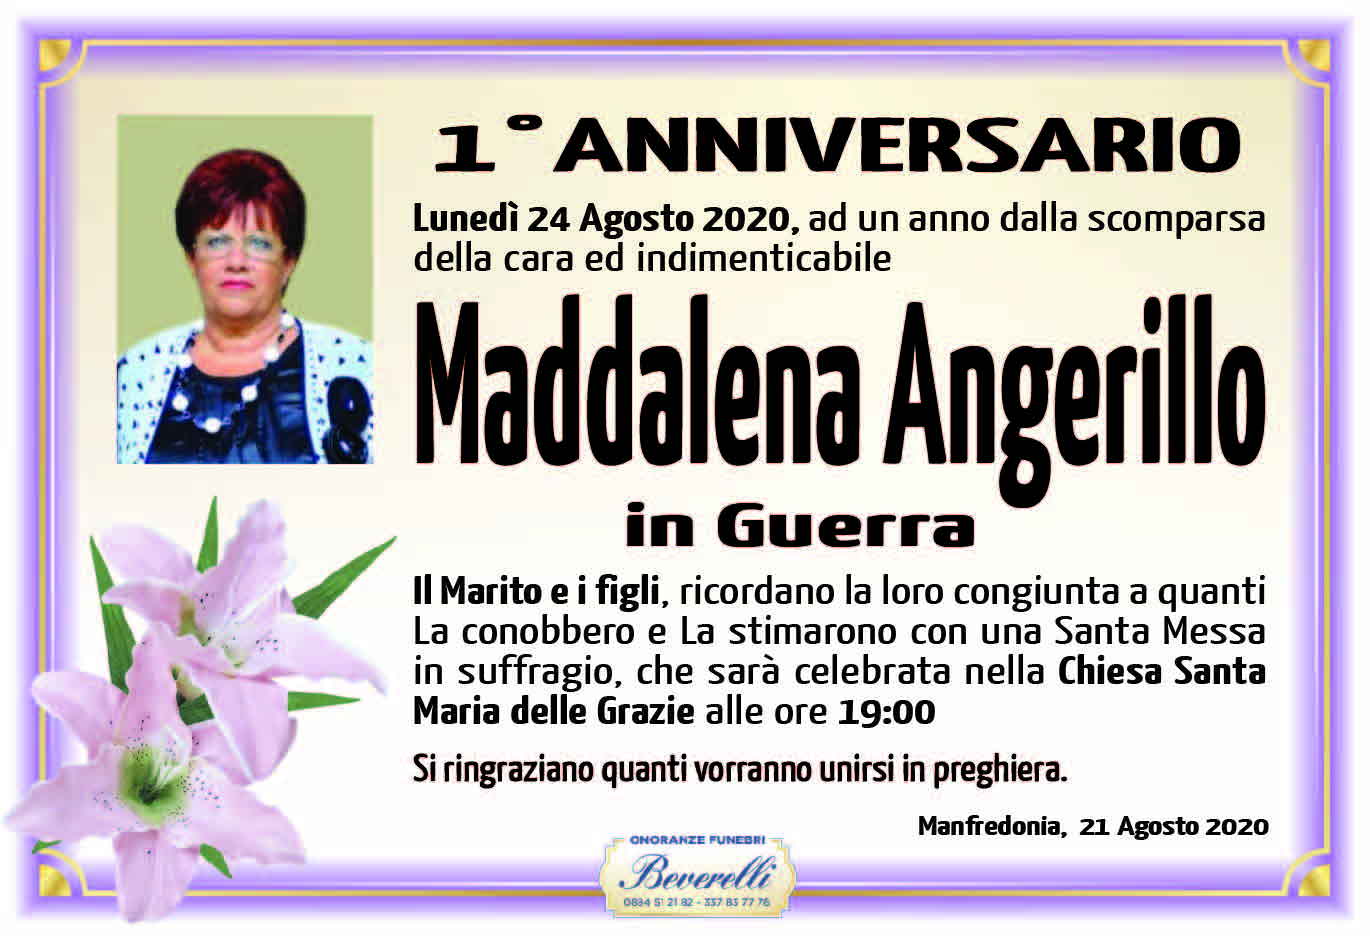 Maddalena Angerillo